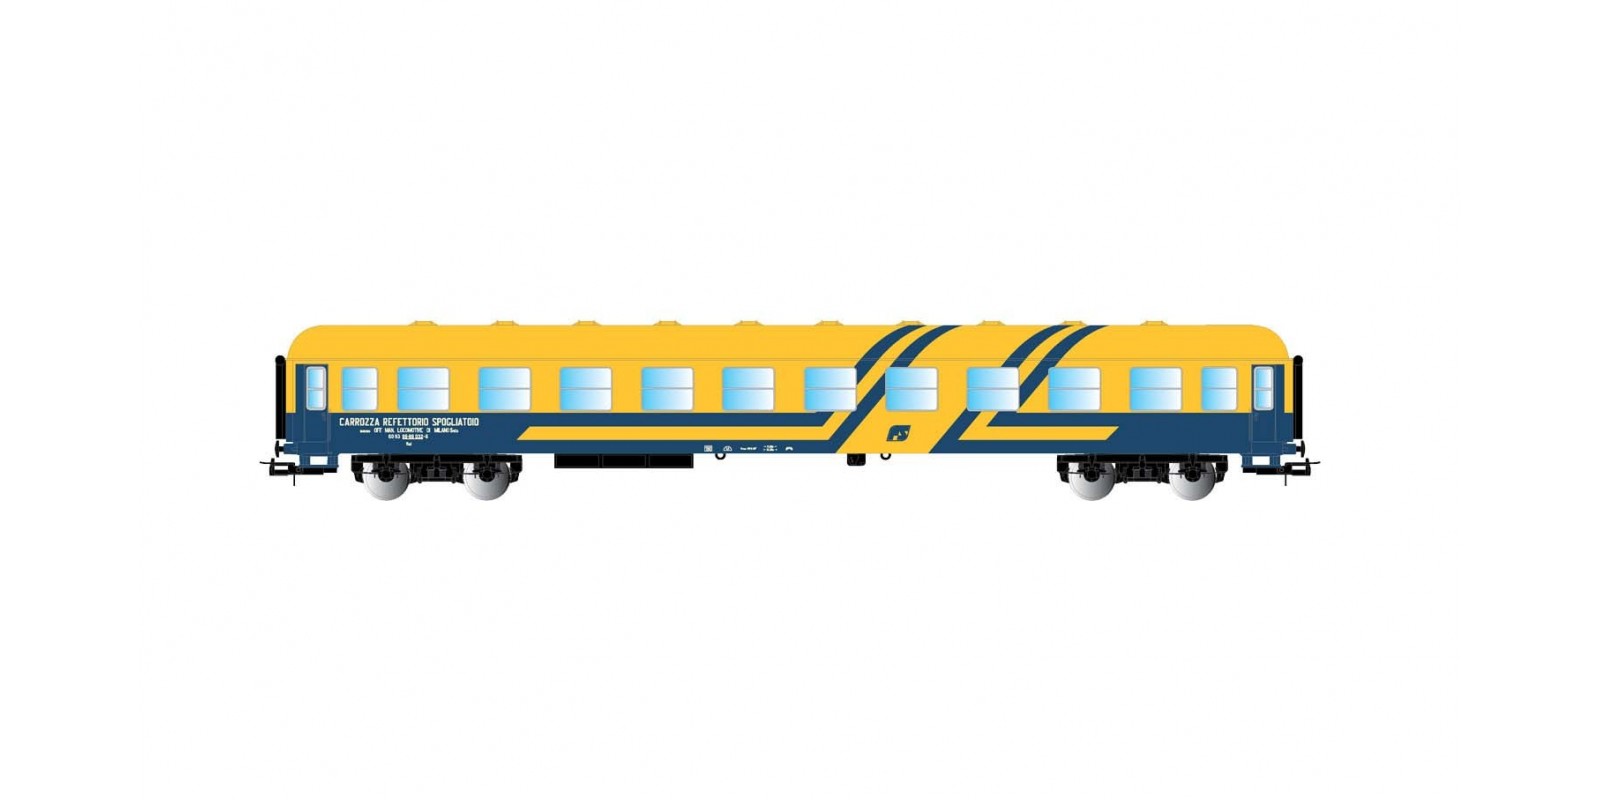 LI4049 "Carrozza Refettorio Spogliatoio" for rescue train, yellow/blue livery